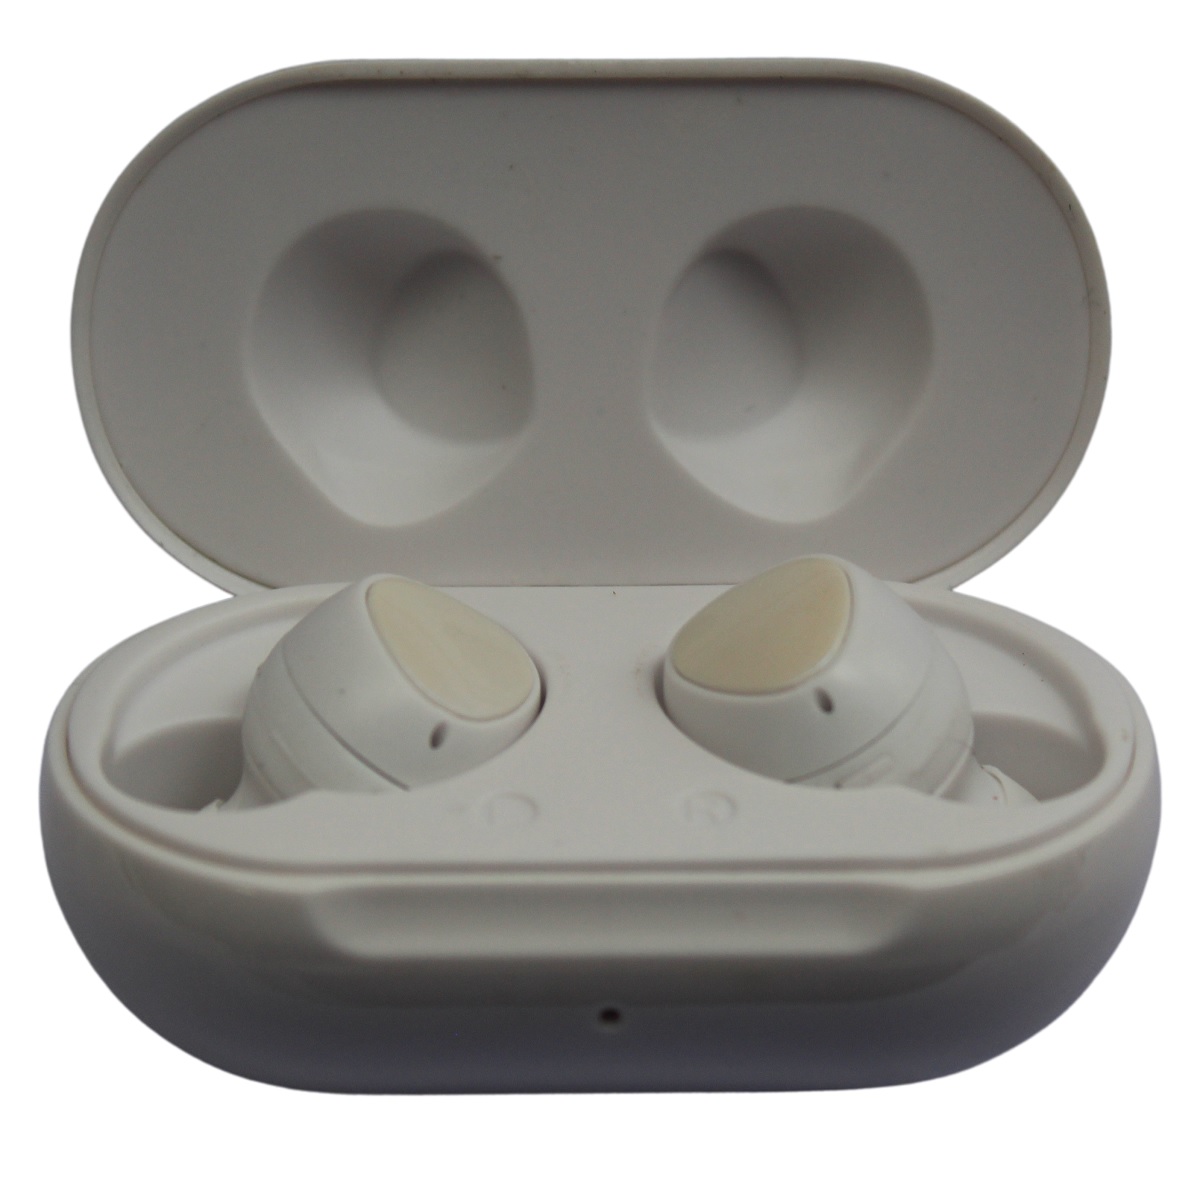 Audífonos Auriculares Manos Libres Bluetooth